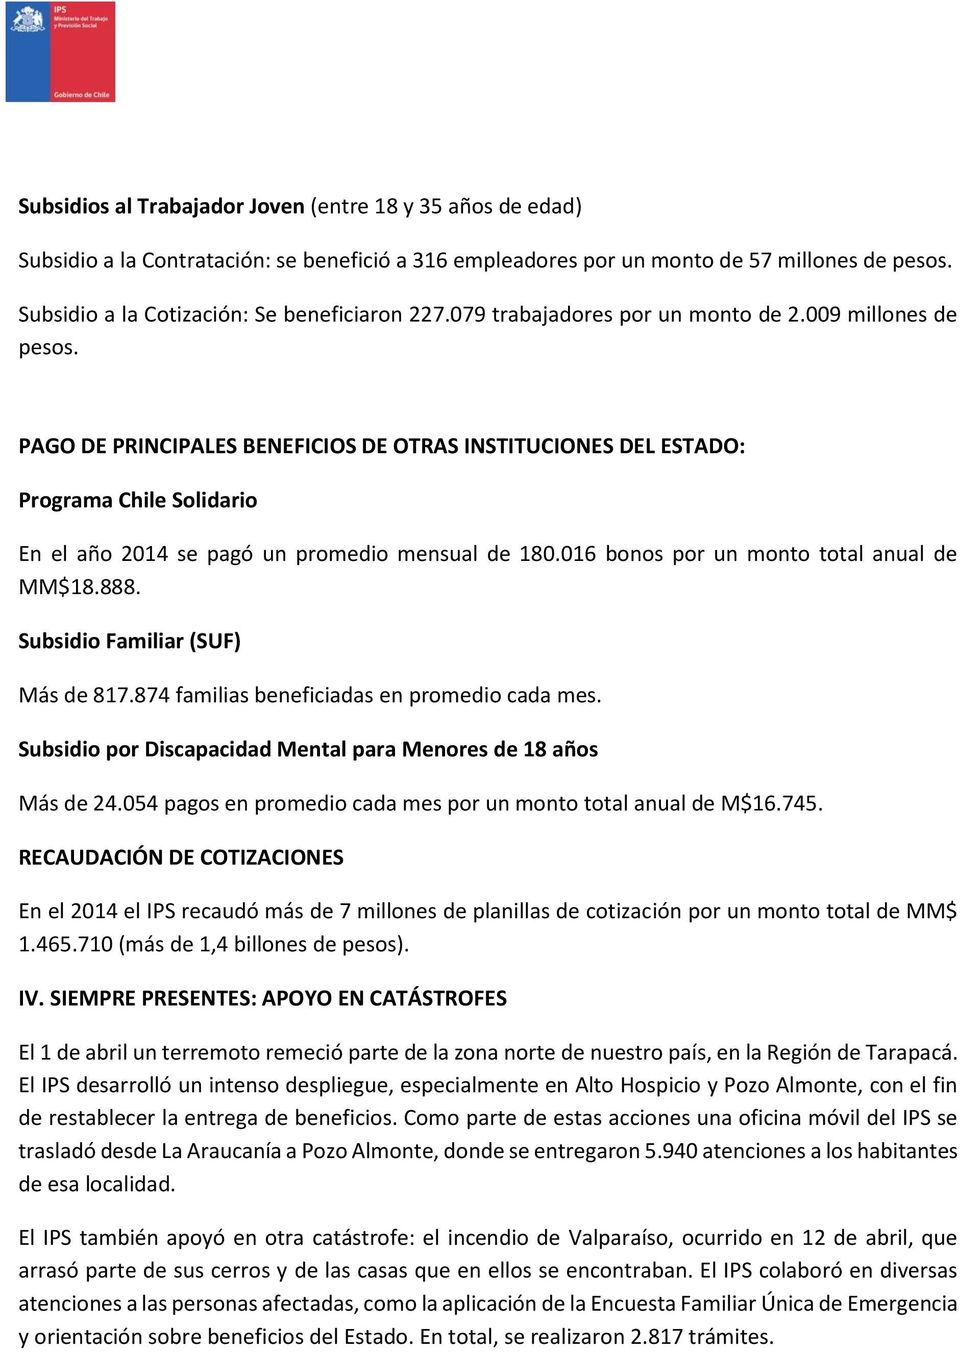 PAGO DE PRINCIPALES BENEFICIOS DE OTRAS INSTITUCIONES DEL ESTADO: Programa Chile Solidario En el año 2014 se pagó un promedio mensual de 180.016 bonos por un monto total anual de MM$18.888.